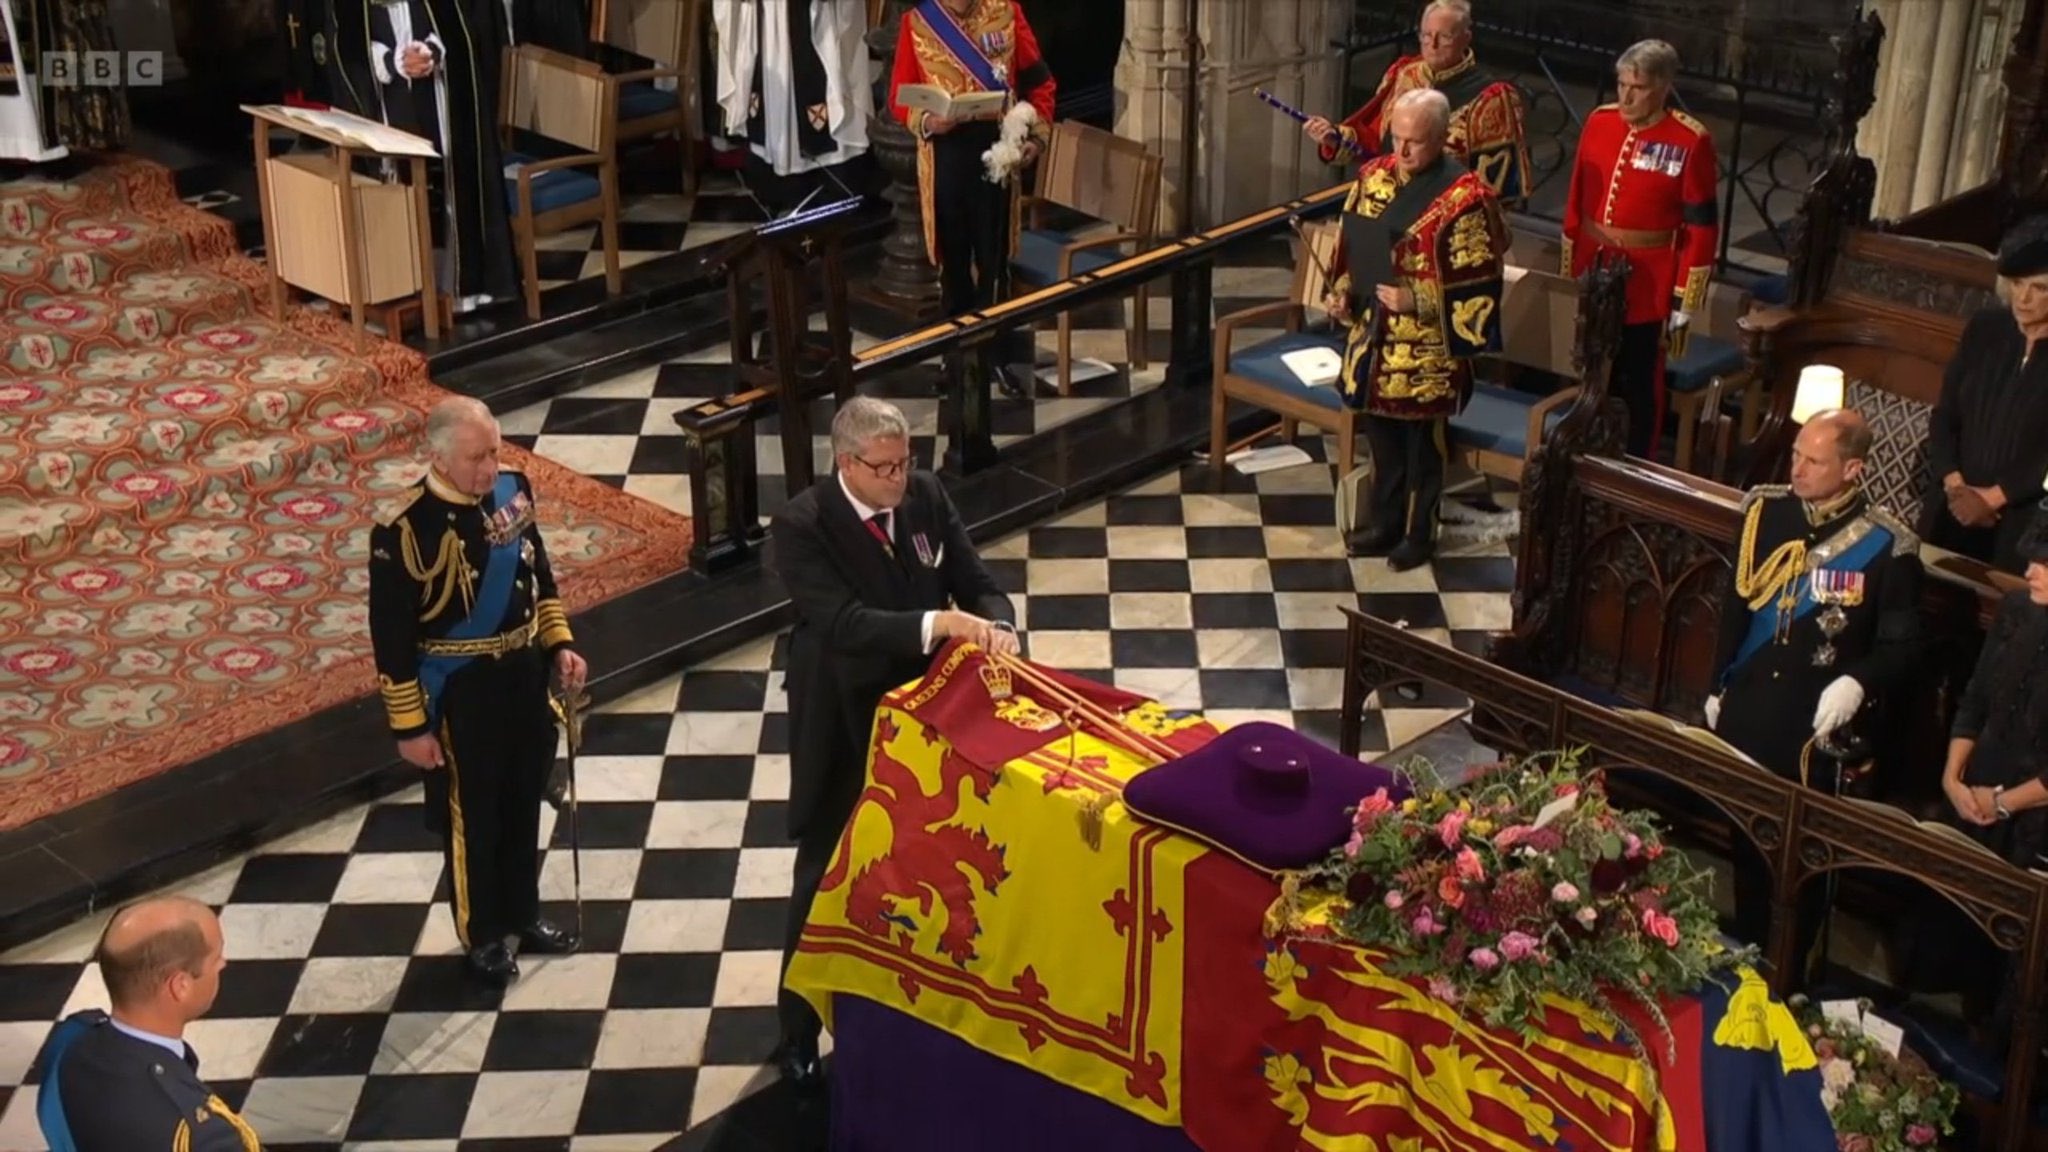 AscoltiTV 19 settembre 2022: I funerali di Elisabetta II cambiano il daytime, parte il GFVip, Lolita Lobosco, Taken 3, I mercenari, Quarta Repubblica